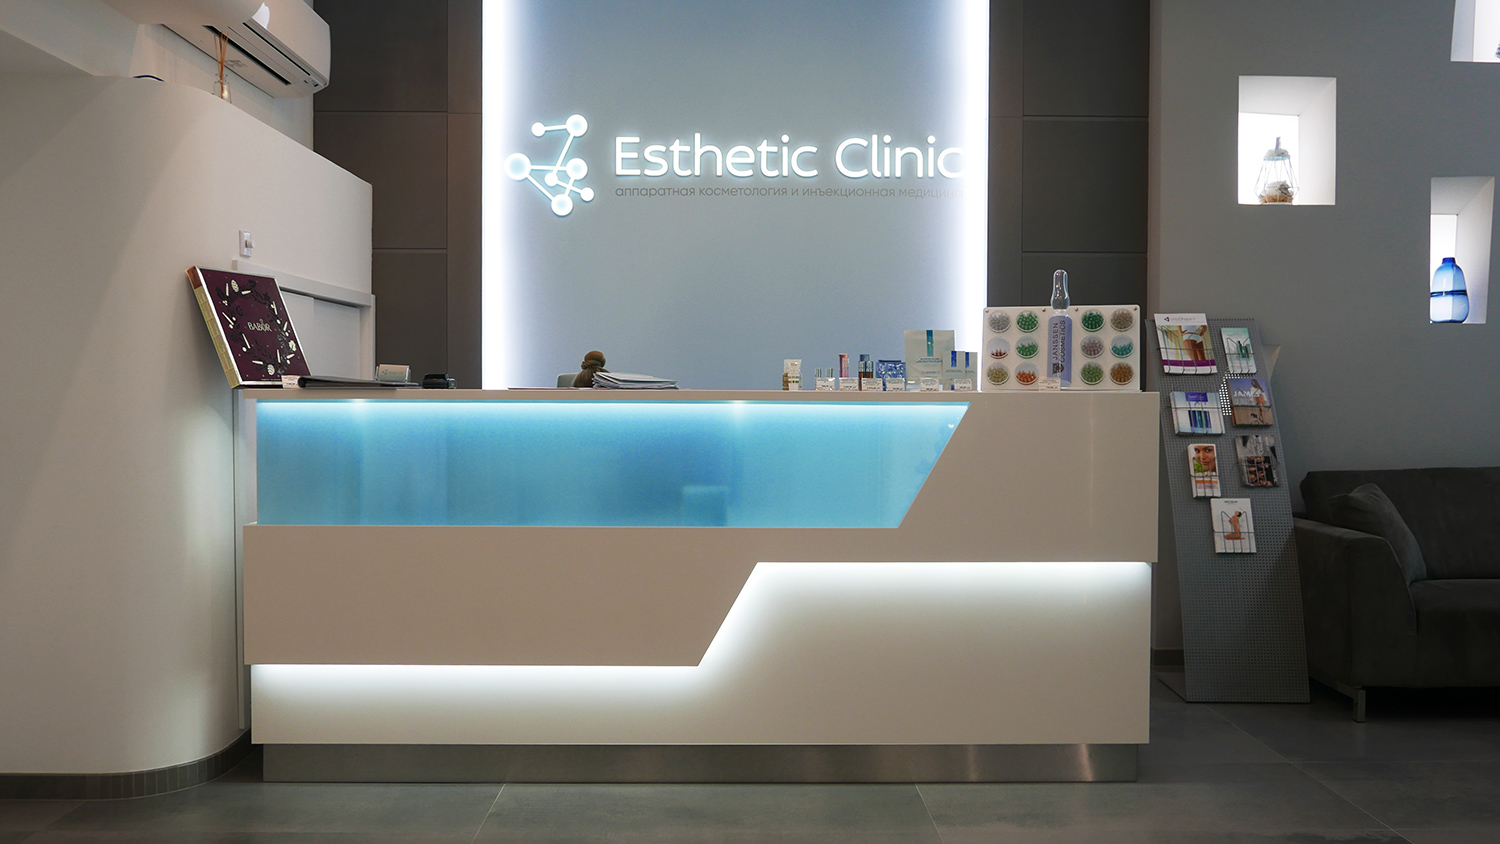 Дизайн и изготовление на заказ стоек ресепшн для клиник, в частности, для косметологческих клиник и центров косметологии.